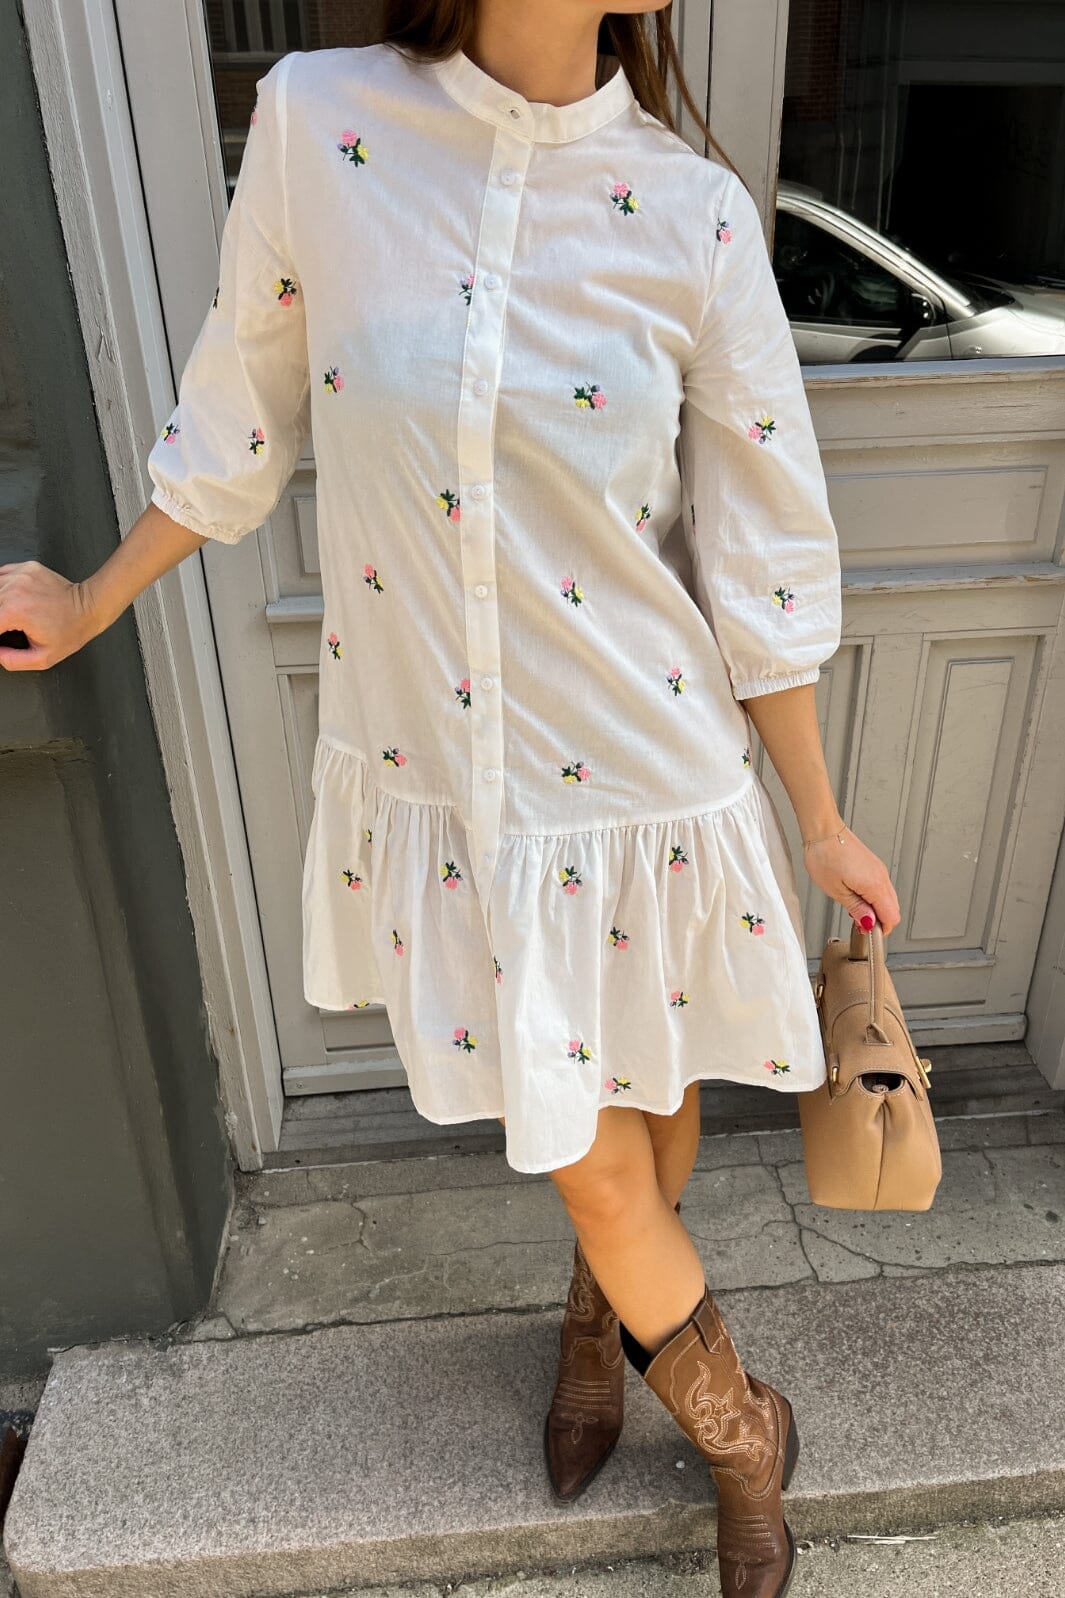 Noella - Imogene Dress - White Embroidery Kjoler 